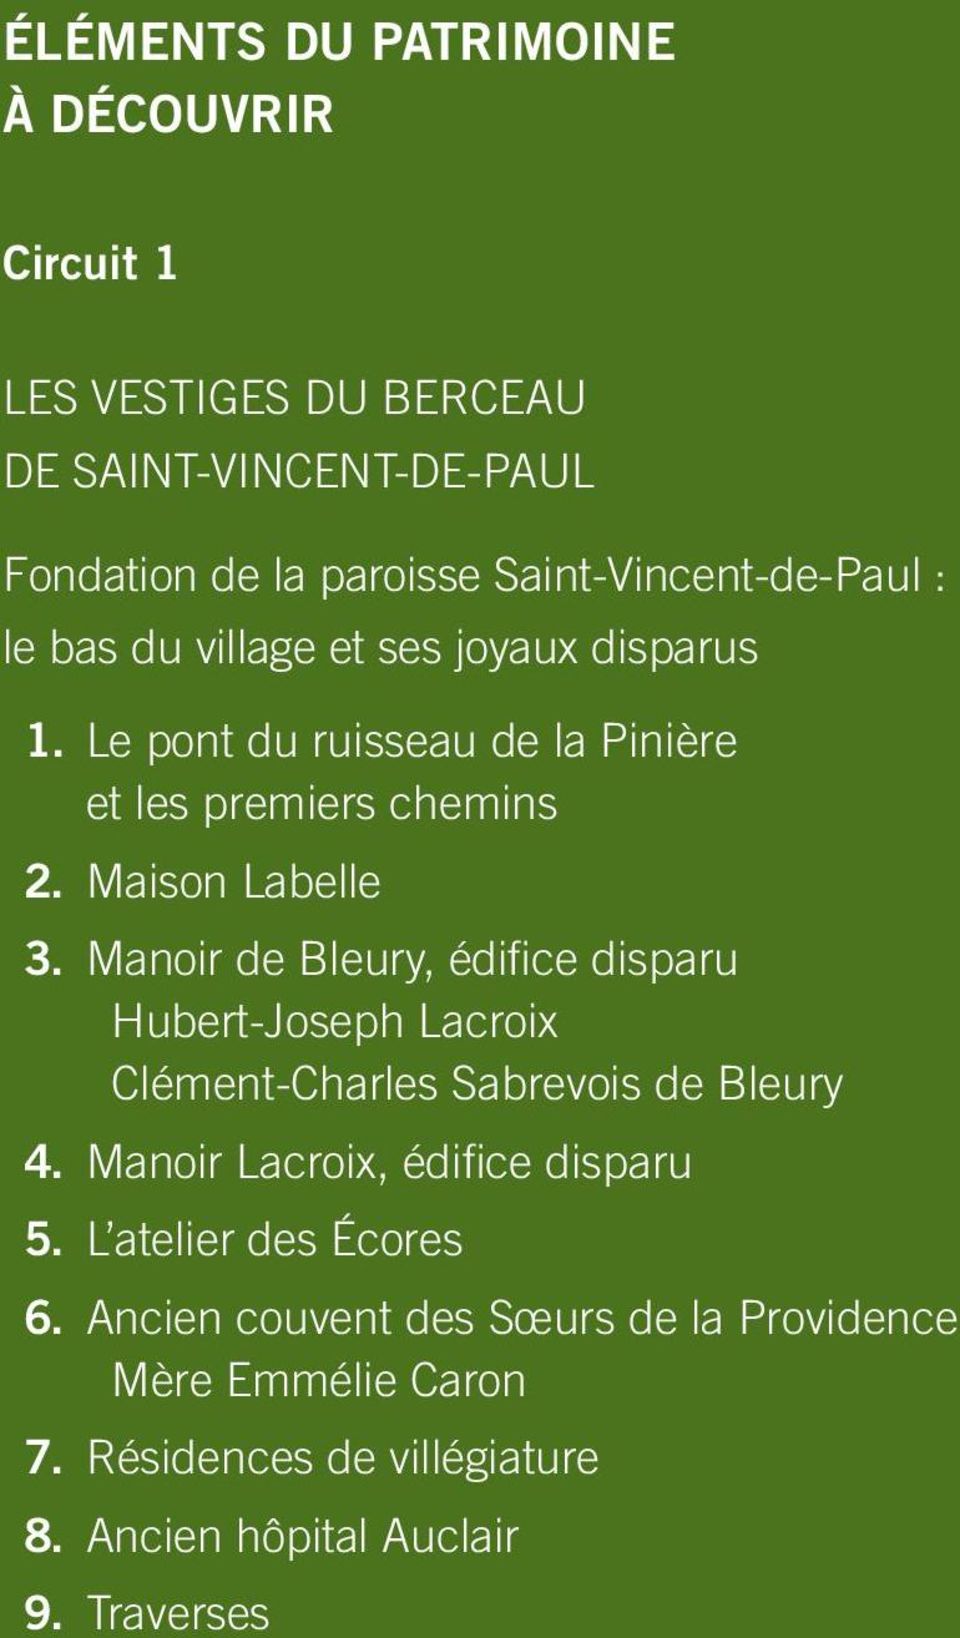 Maison Labelle 3. Manoir de Bleury, édifice disparu Hubert-Joseph Lacroix Clément-Charles Sabrevois de Bleury 4.